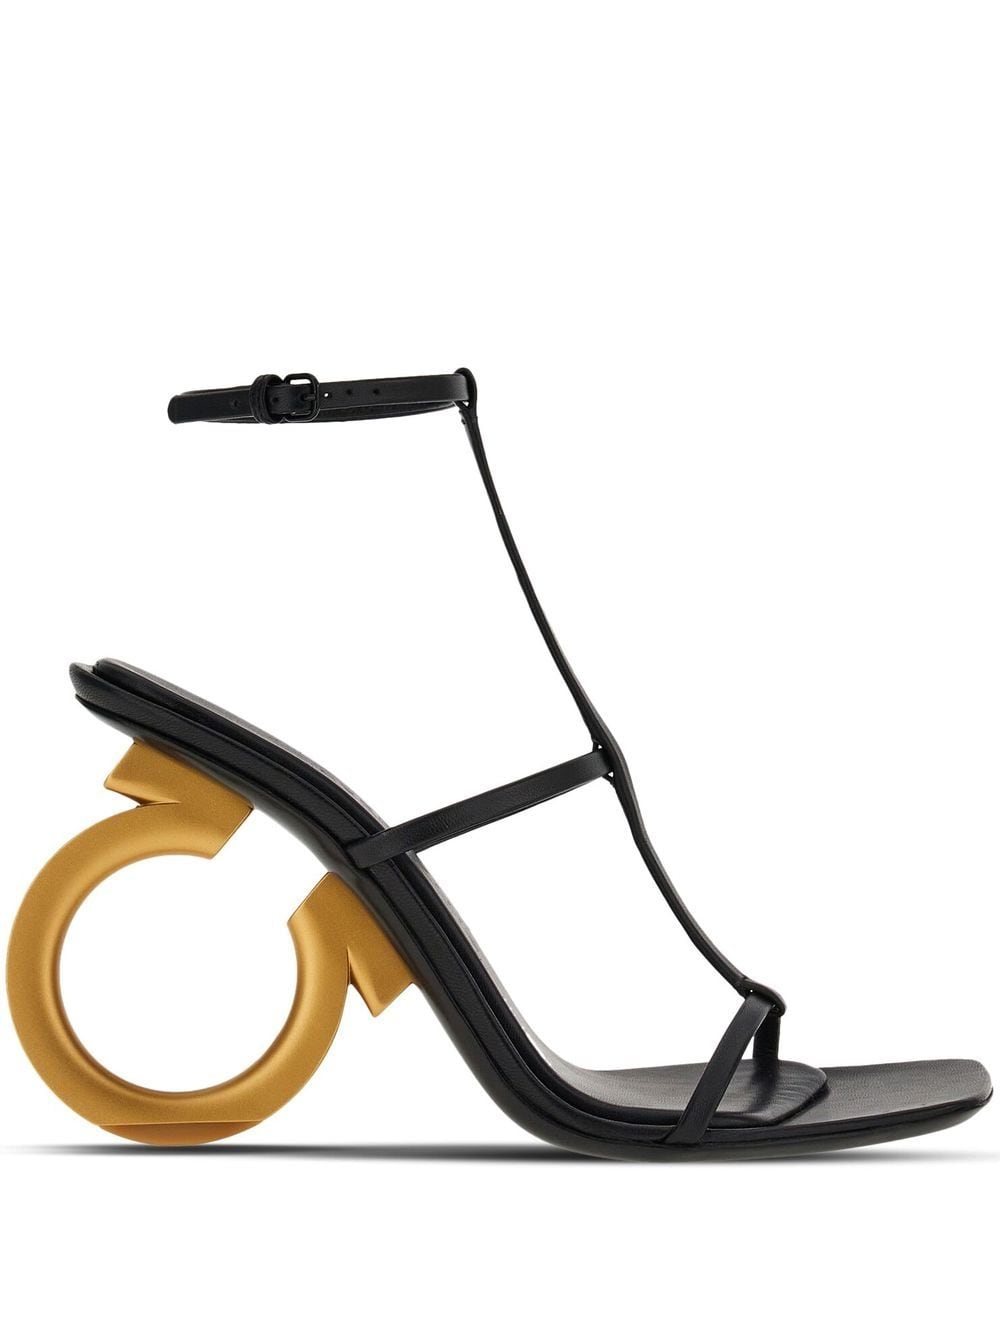 Ferragamo Elina 105mm nappa leather sandals - Black von Ferragamo